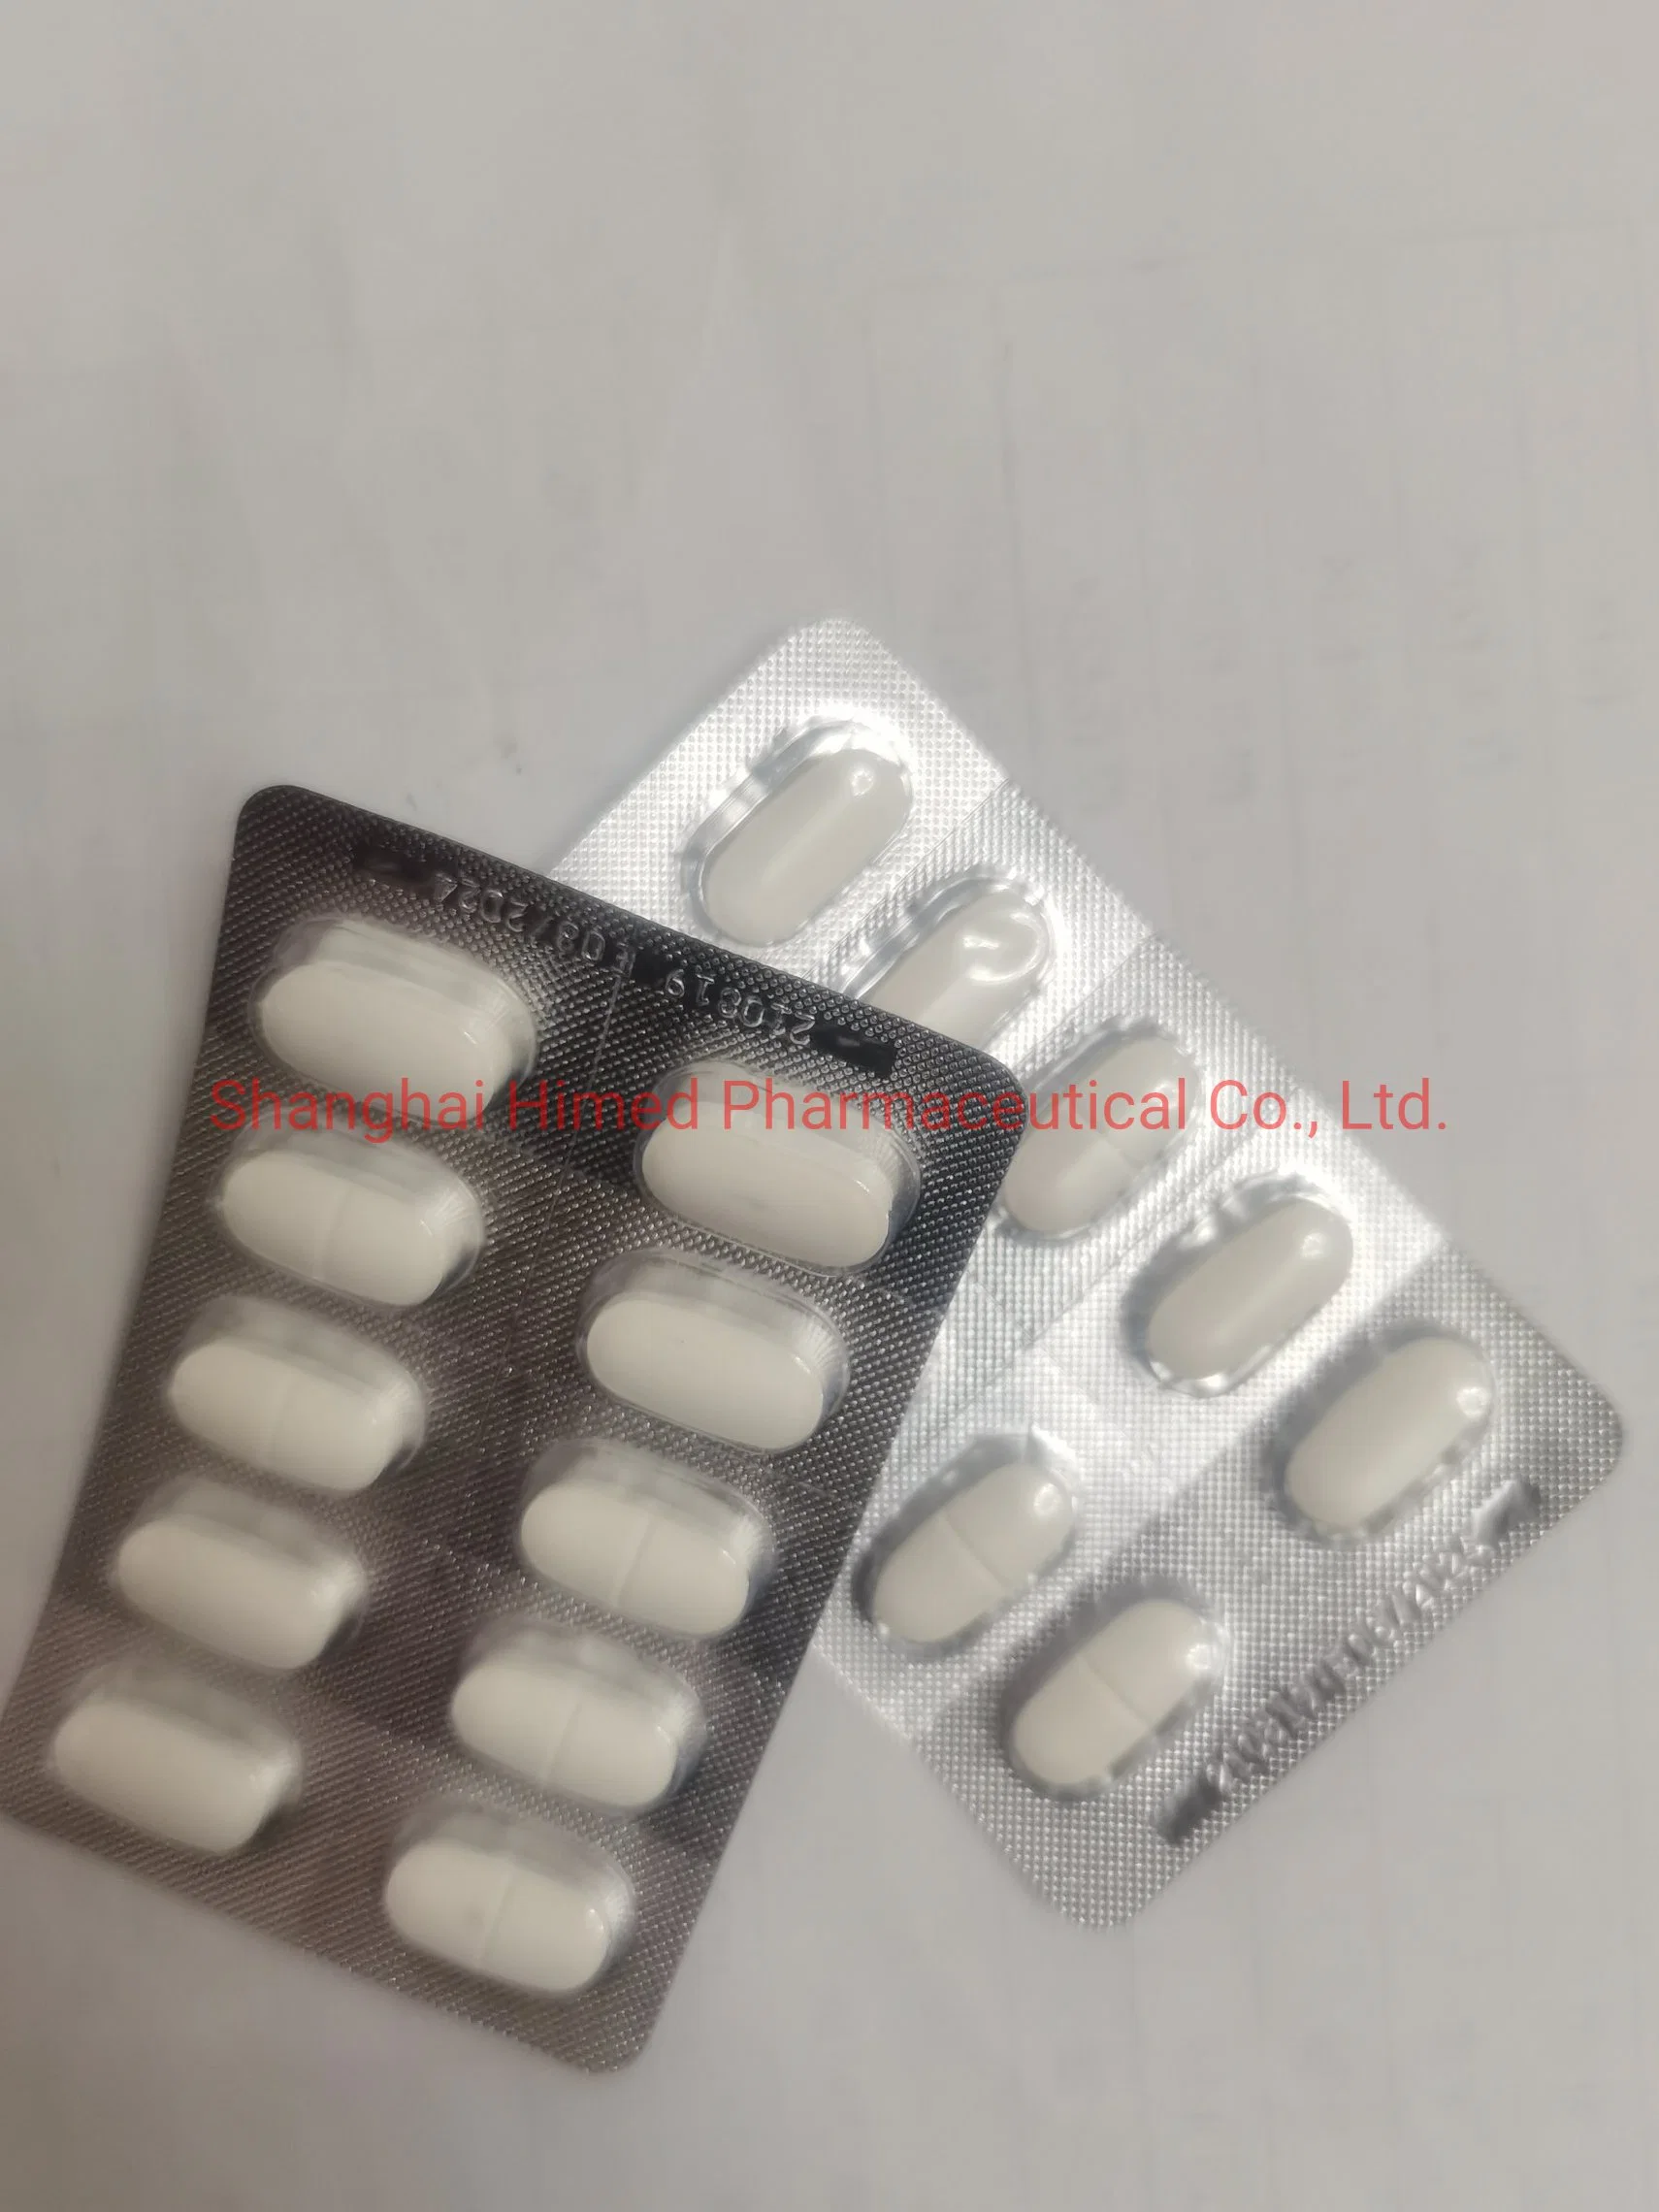 Ciprofloxacin Hydrochlorid HCl filmbeschichtete Tablette 250mg 500mg 750mg Western Medicine